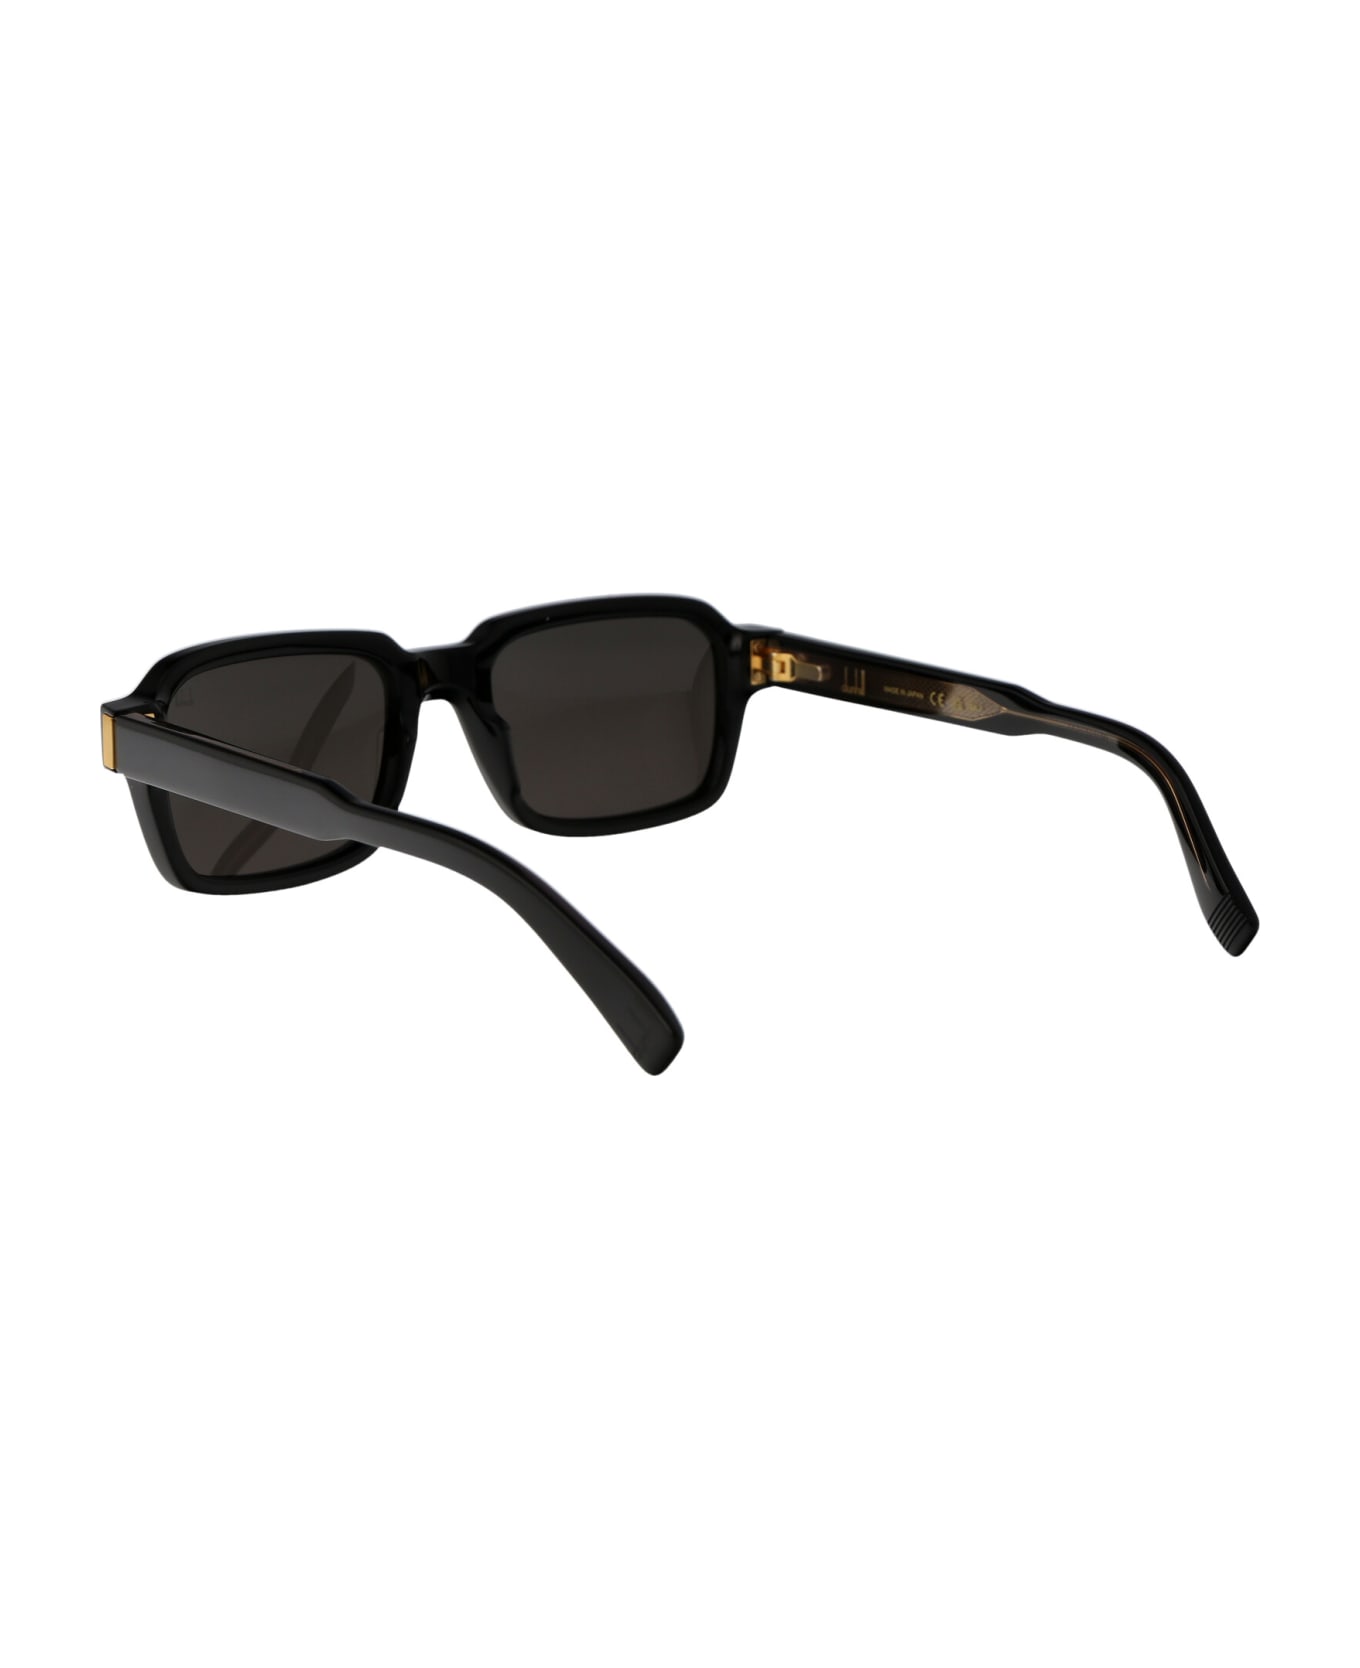 Dunhill Du0057s Sunglasses - 001 BLACK BLACK GREY サングラス